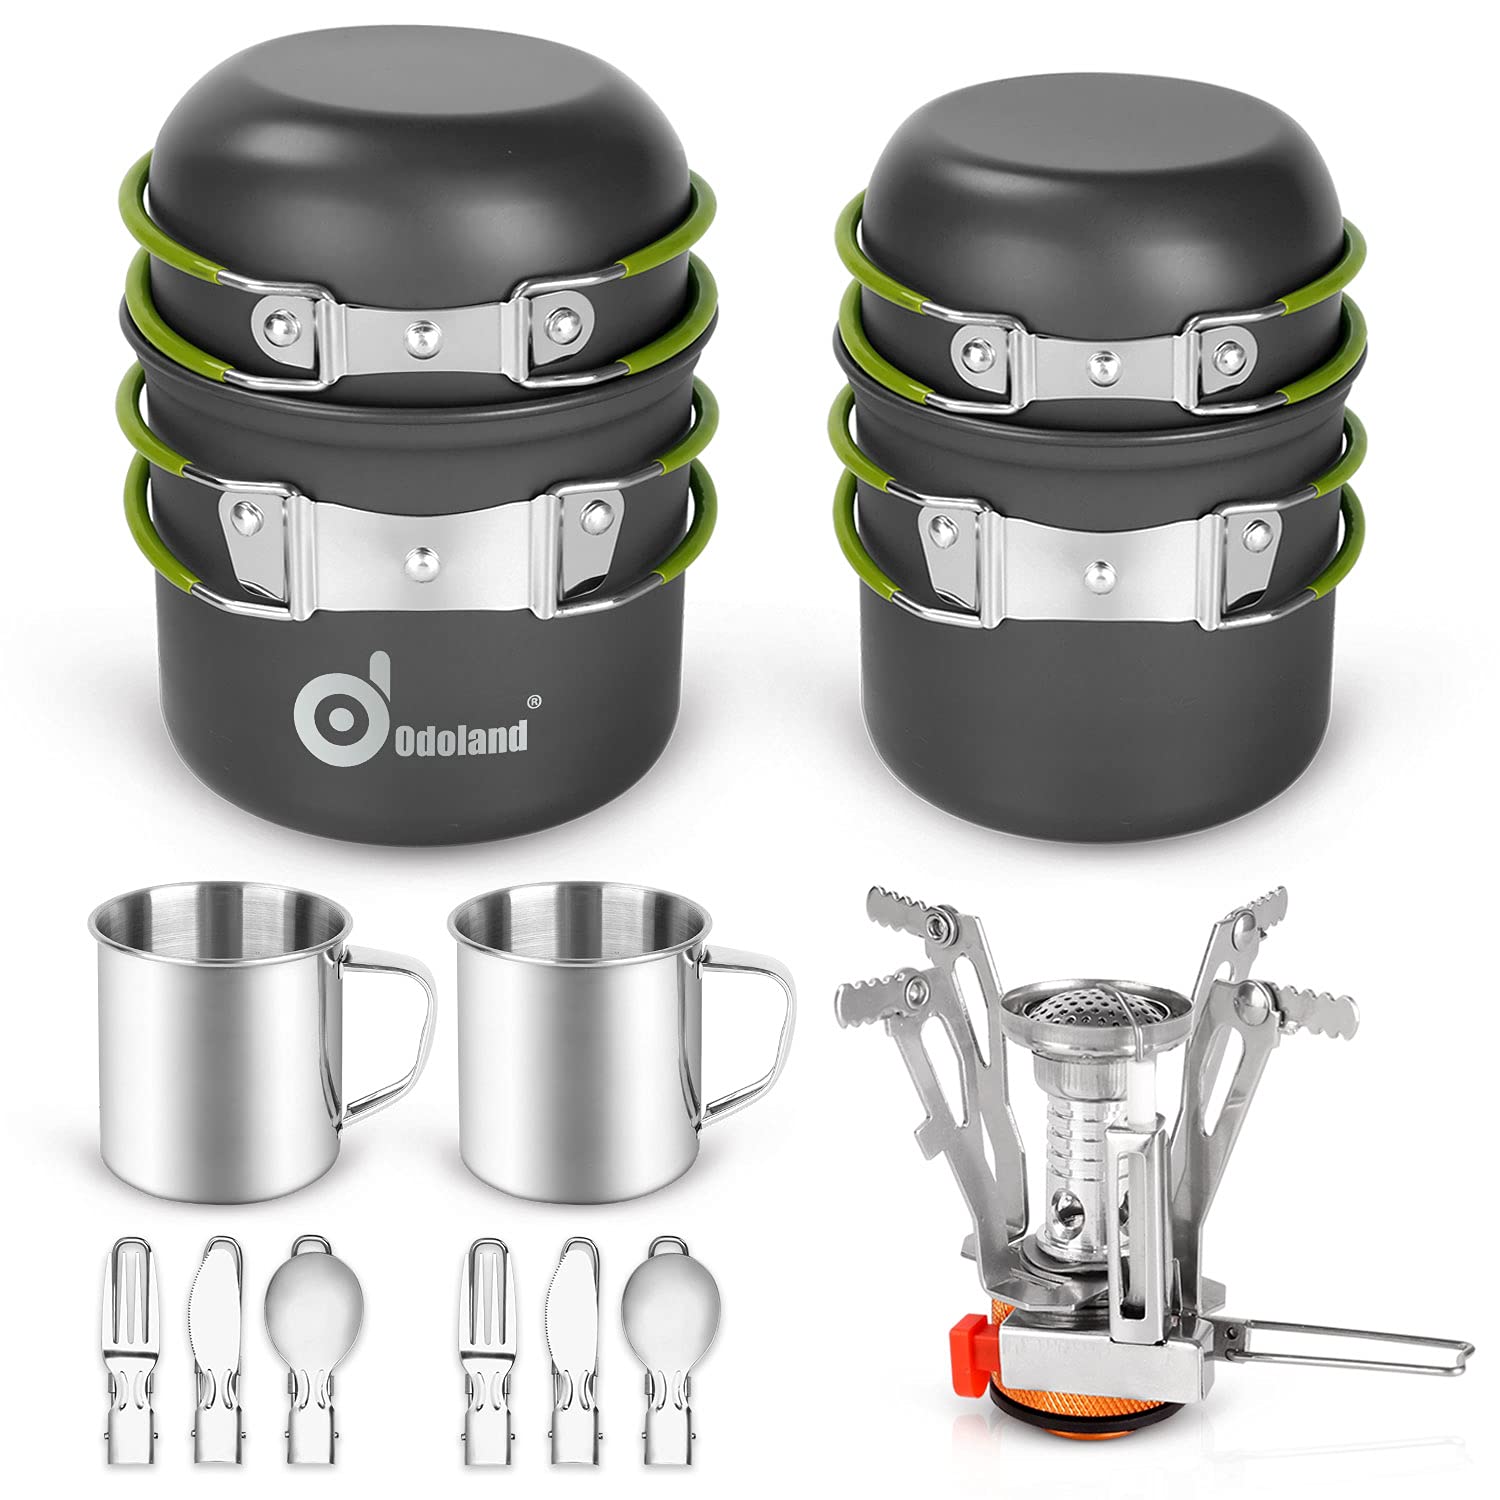 送料無料Odoland 16pcs Camping Cookware Mess Kit Lightweight Pot Pan Mini Stove with 2 Cups Fork Spoon Kits for Backpack